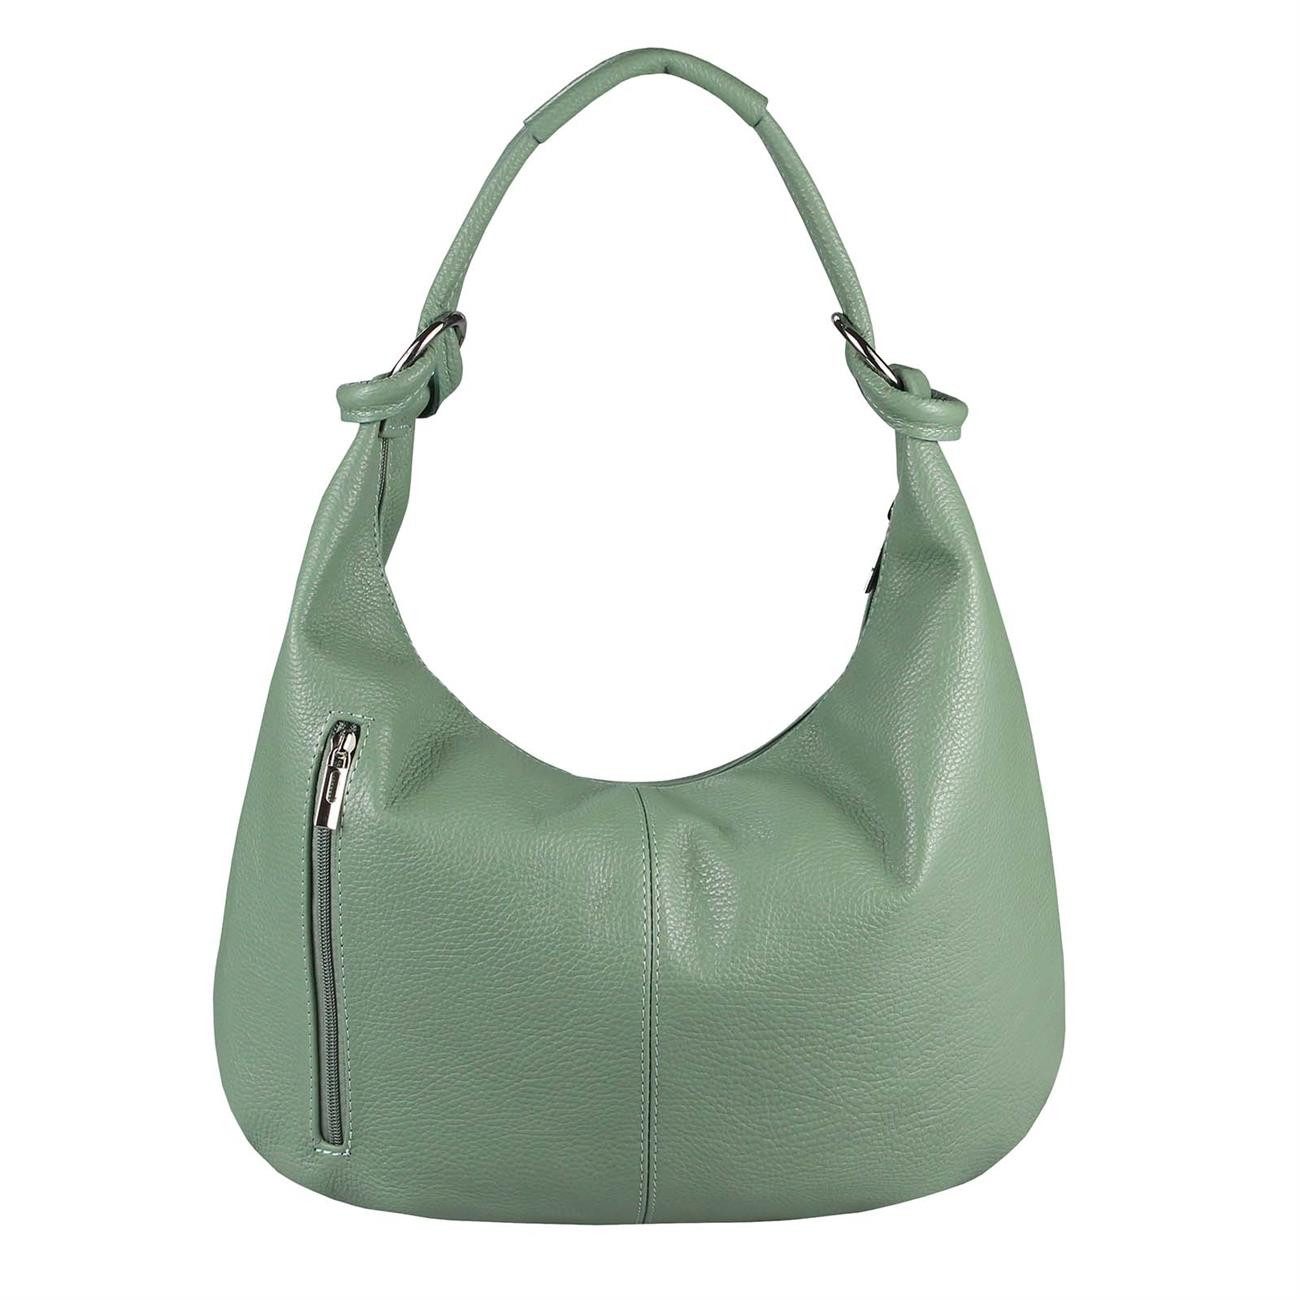 ITALYSHOP24 Schultertasche Made in Italy Damen XXL Leder Shopper, als Handtasche, Henkeltasche, Schultertasche tragbar